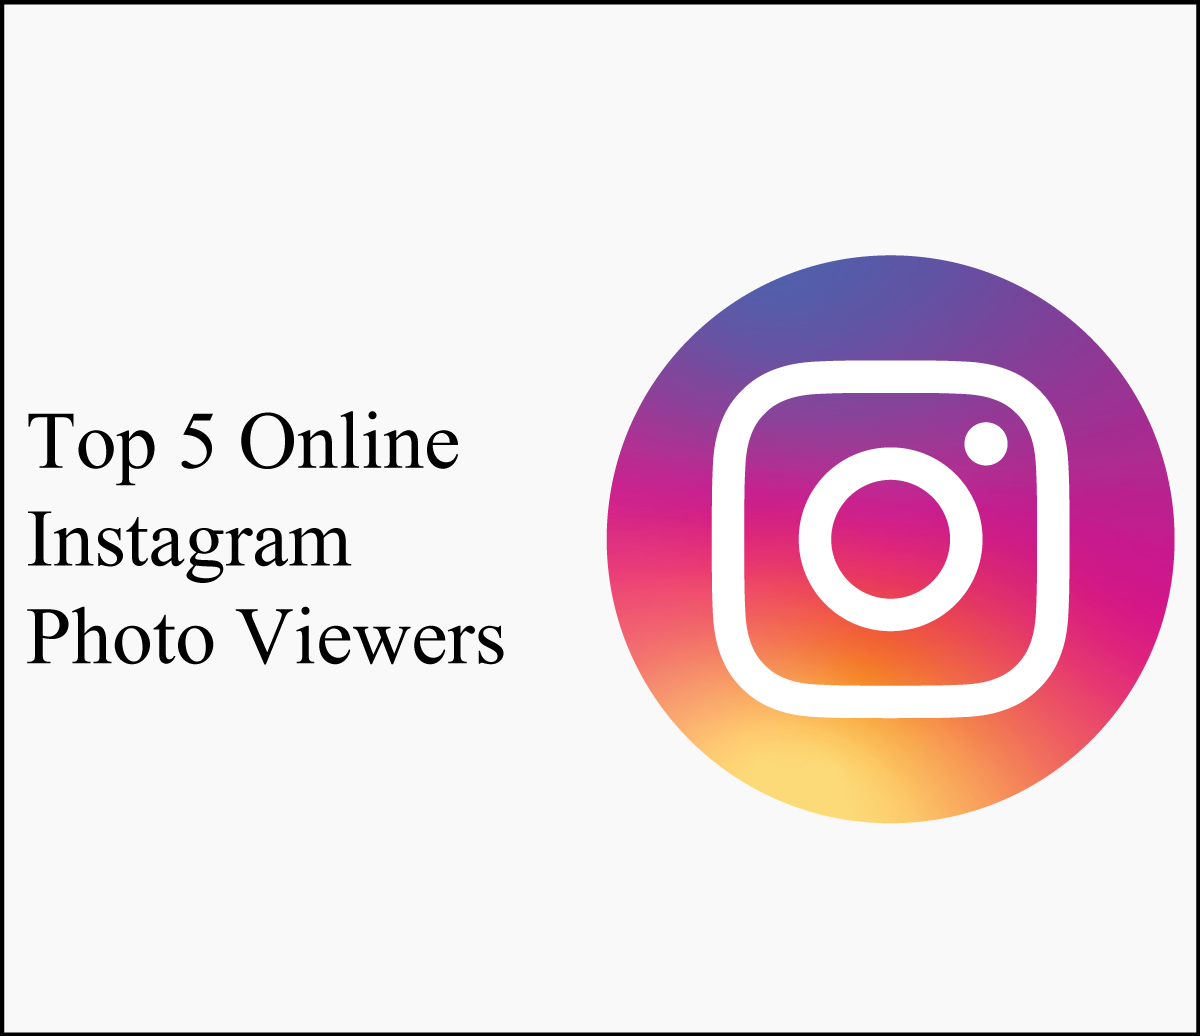 Top 5 Online Instagram Photo Viewers